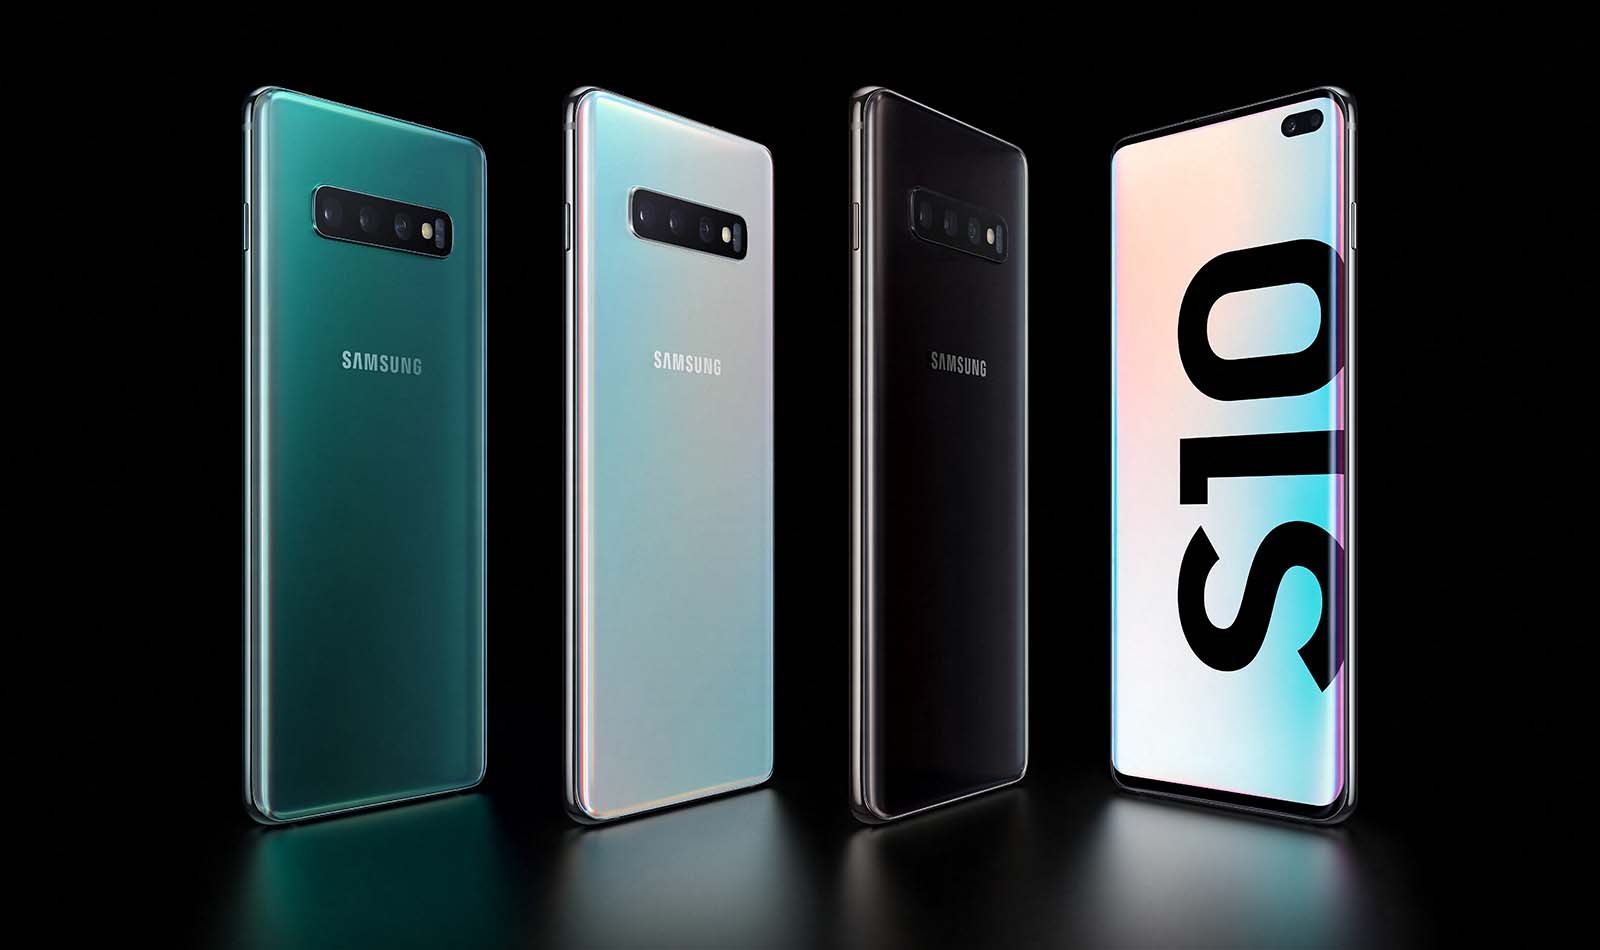 Samsung lanzaría un Galaxy S10 más económico que el S10e